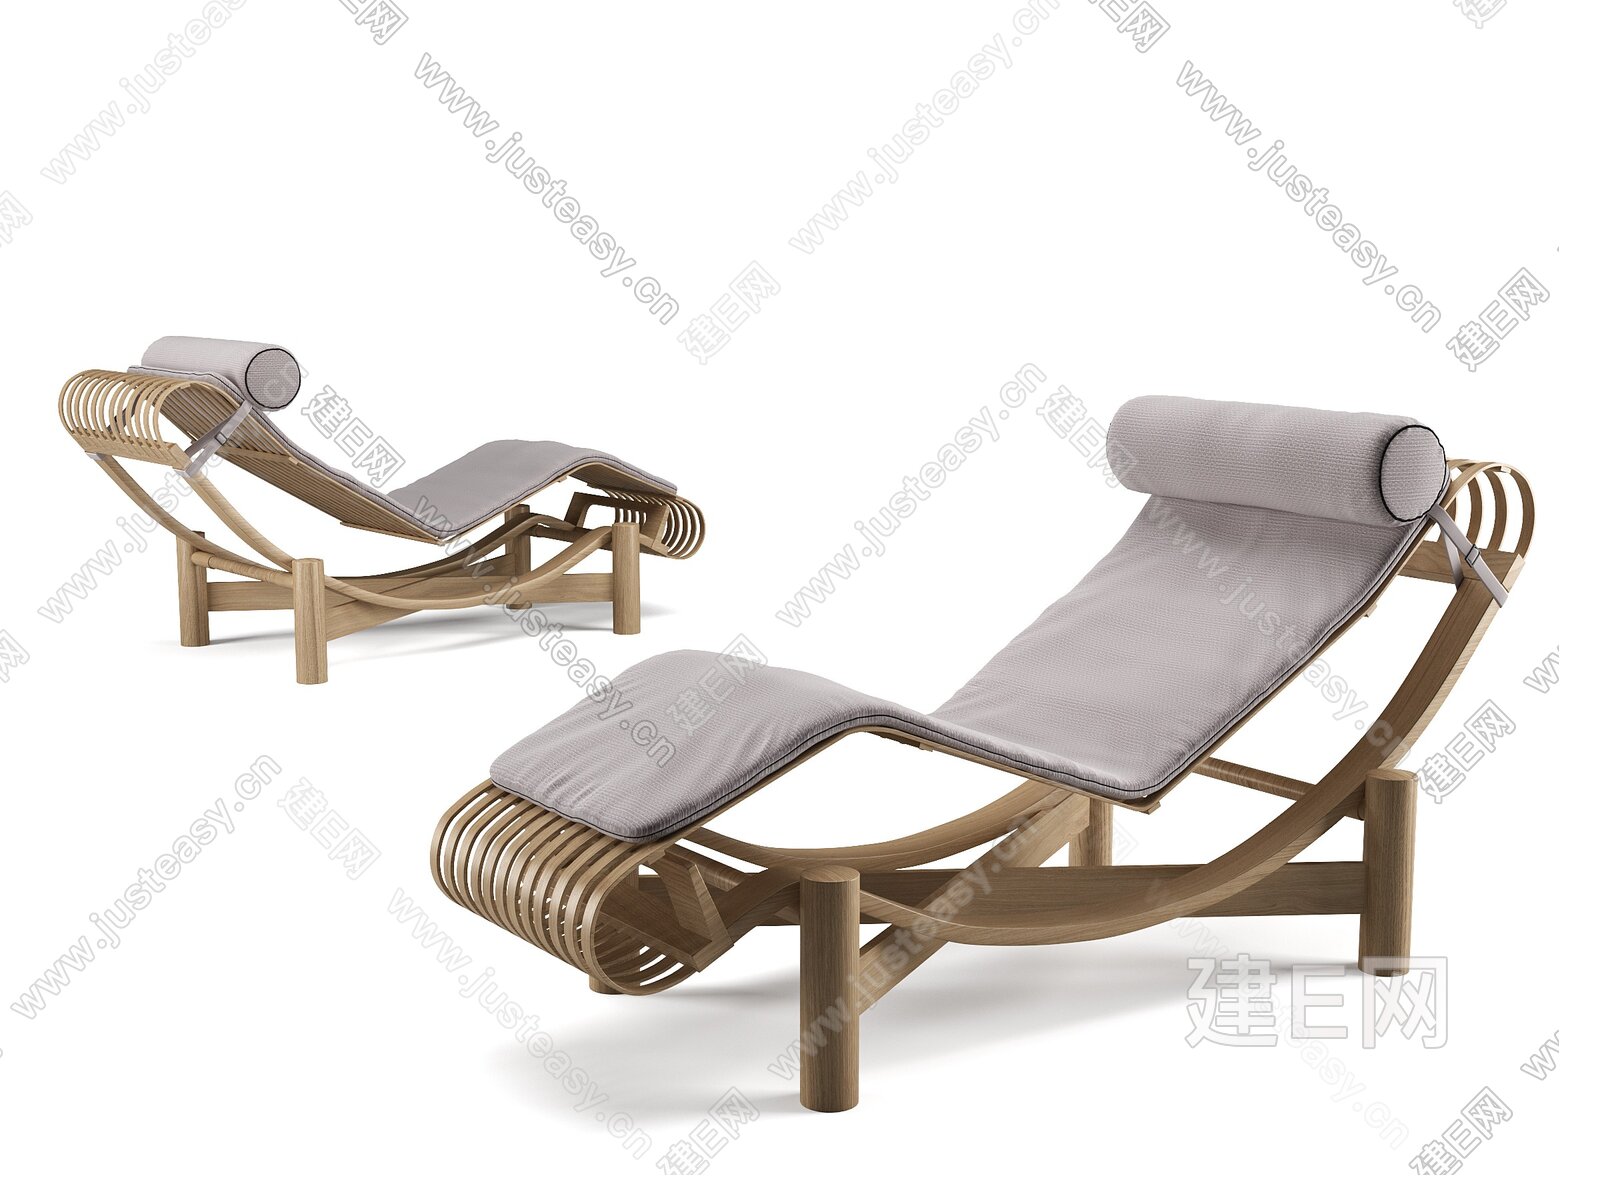 Bassass 现代躺椅3d模型下载115427394_3dBassass 现代躺椅模型下载_3dBassass 现代躺椅max模型免费下载 ...